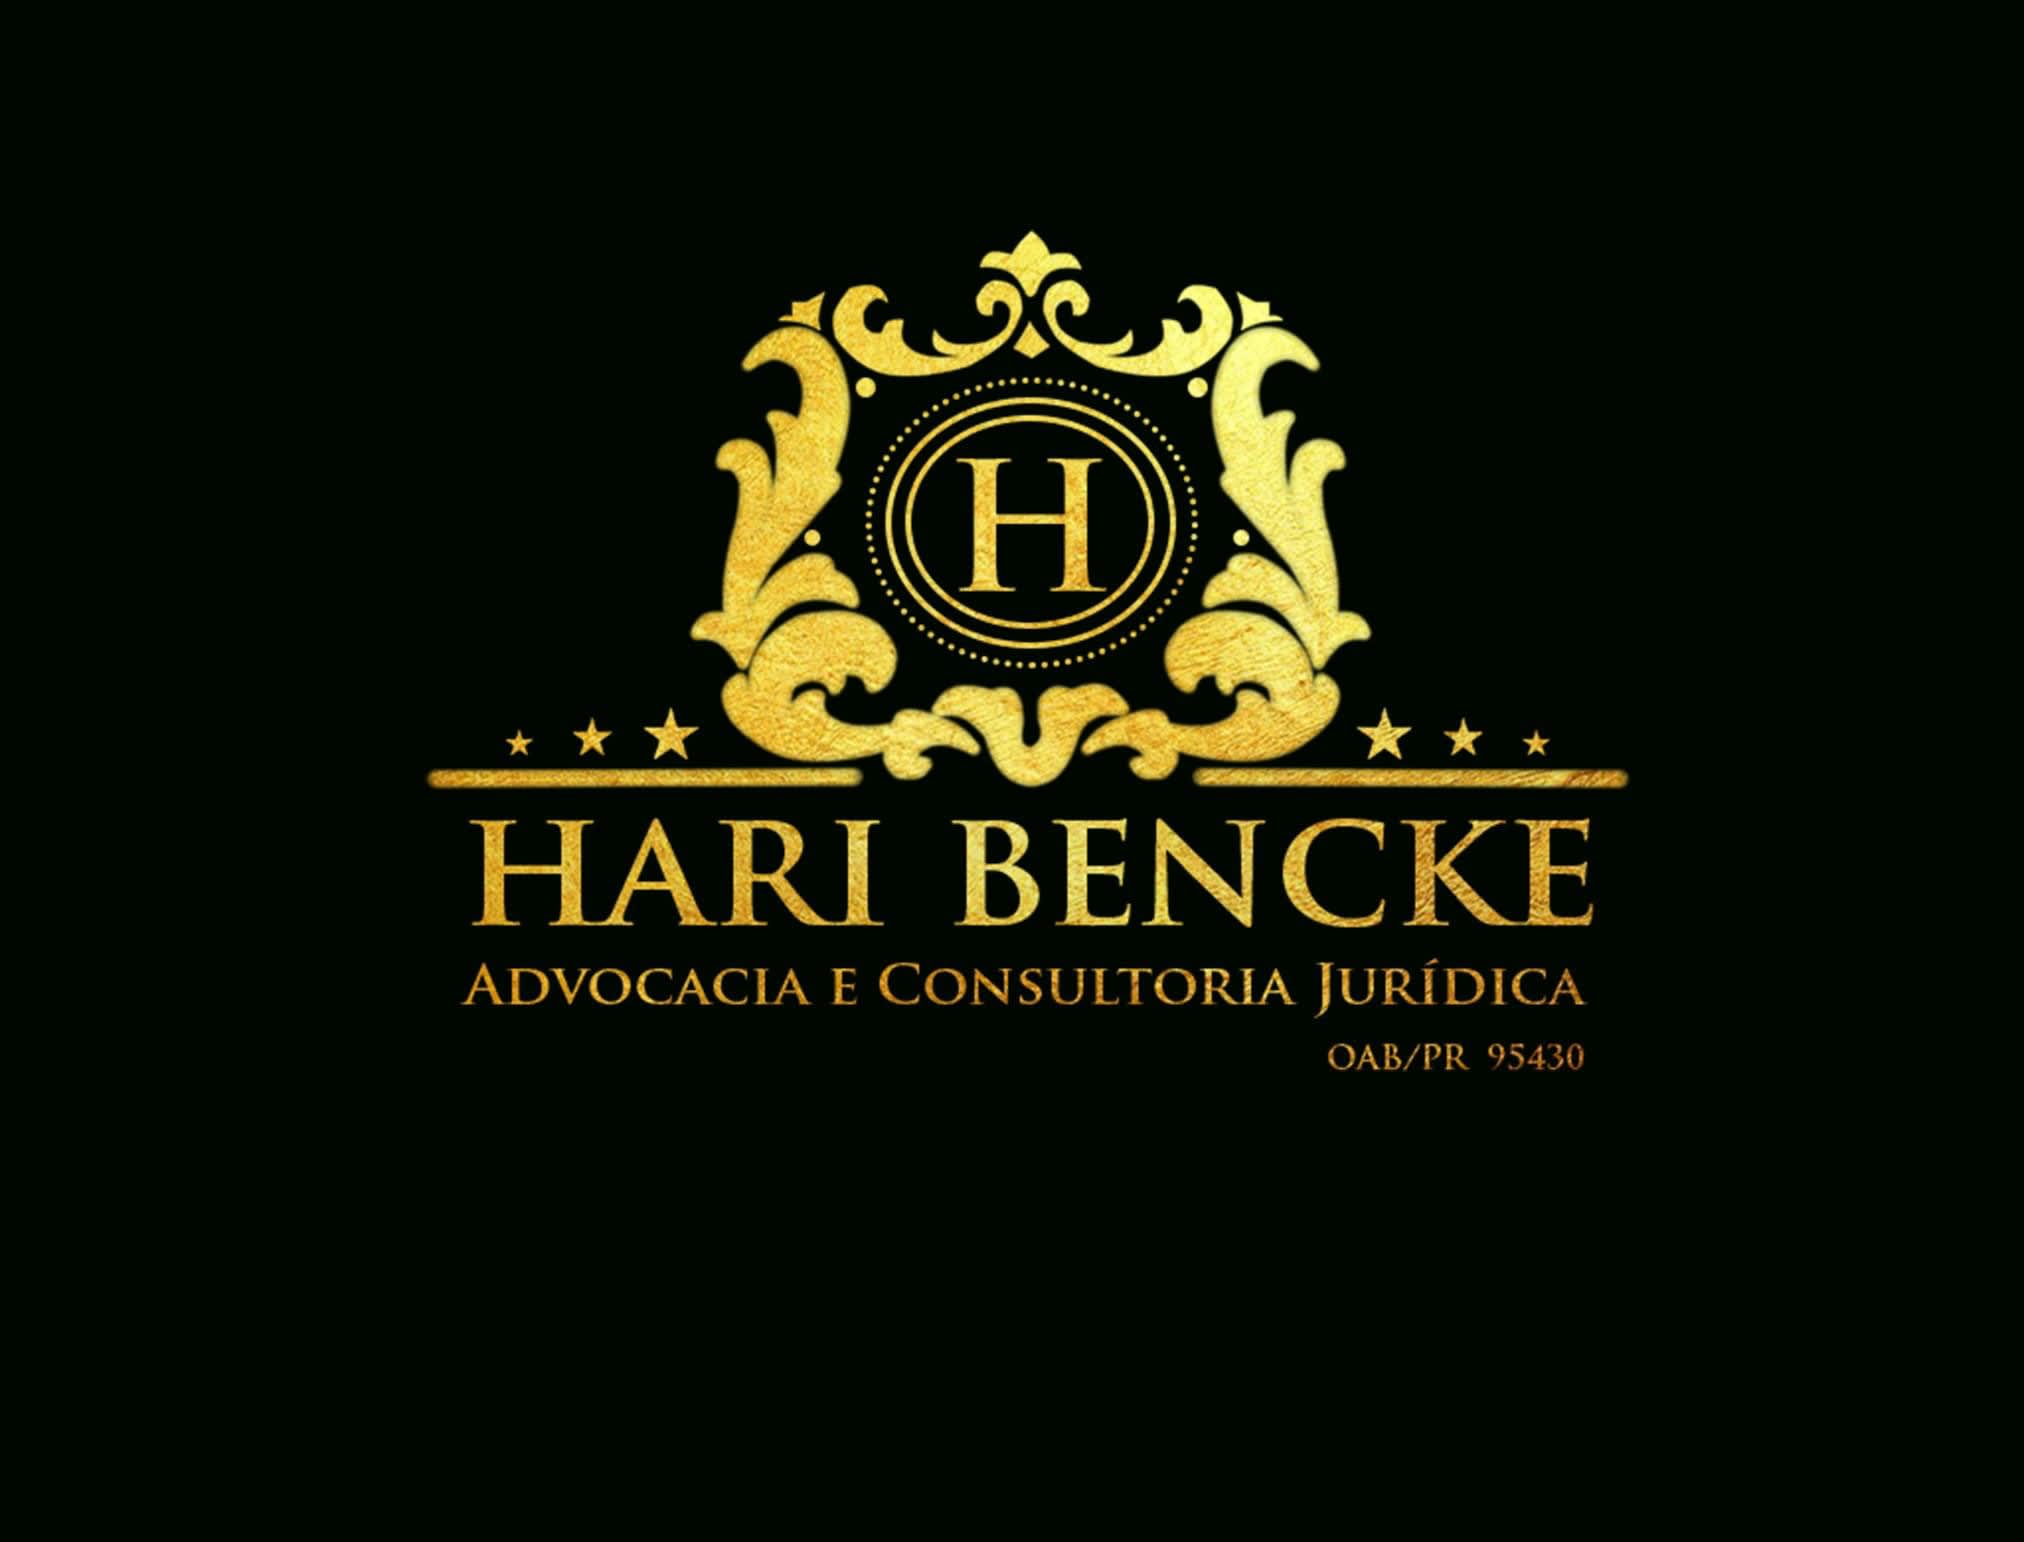 Hari Bencke Advocacia e Consultoria Jurídica